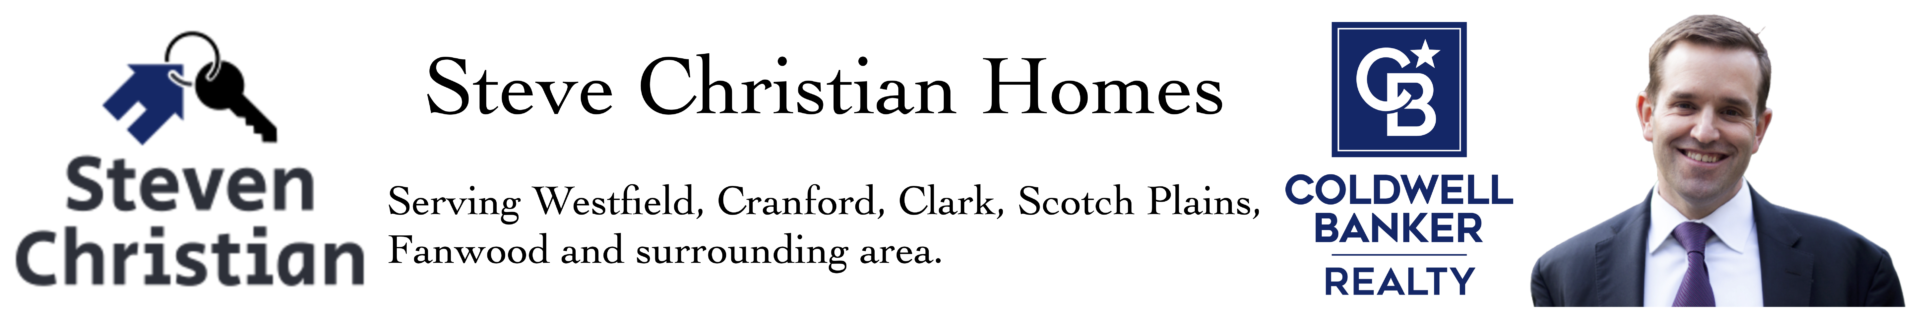 Steve Christian Homes logo